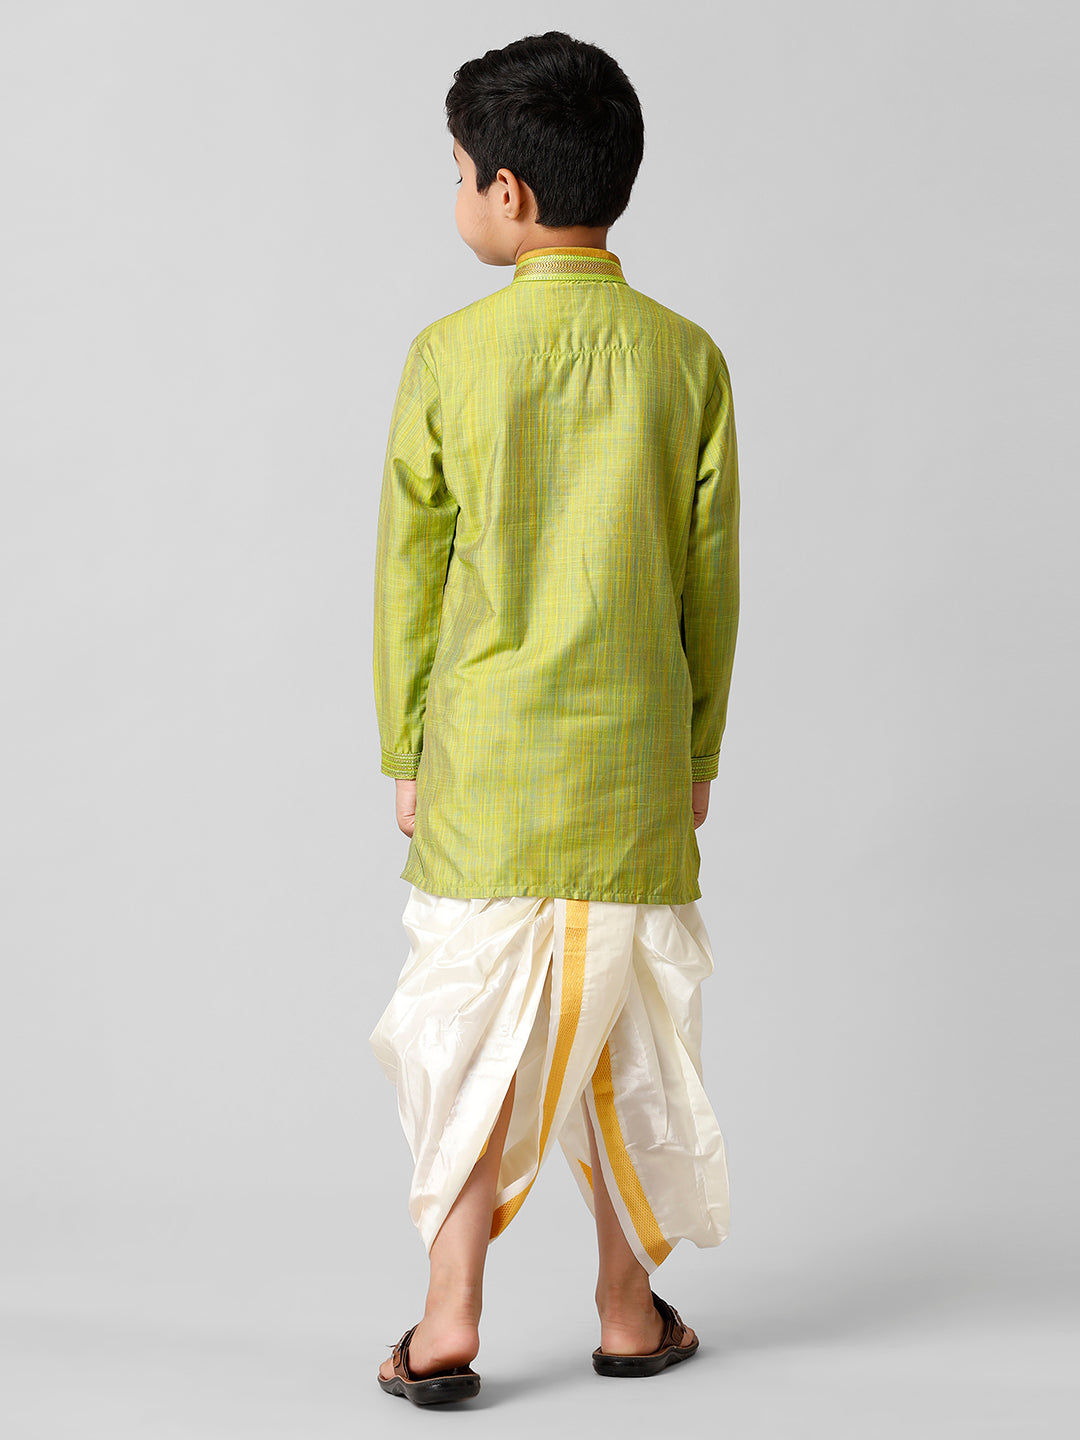 Boys Emerald Cotton Parrot Green Kurta with Cream Readymade Art Silk Panchakacham Combo EMD5-Back view